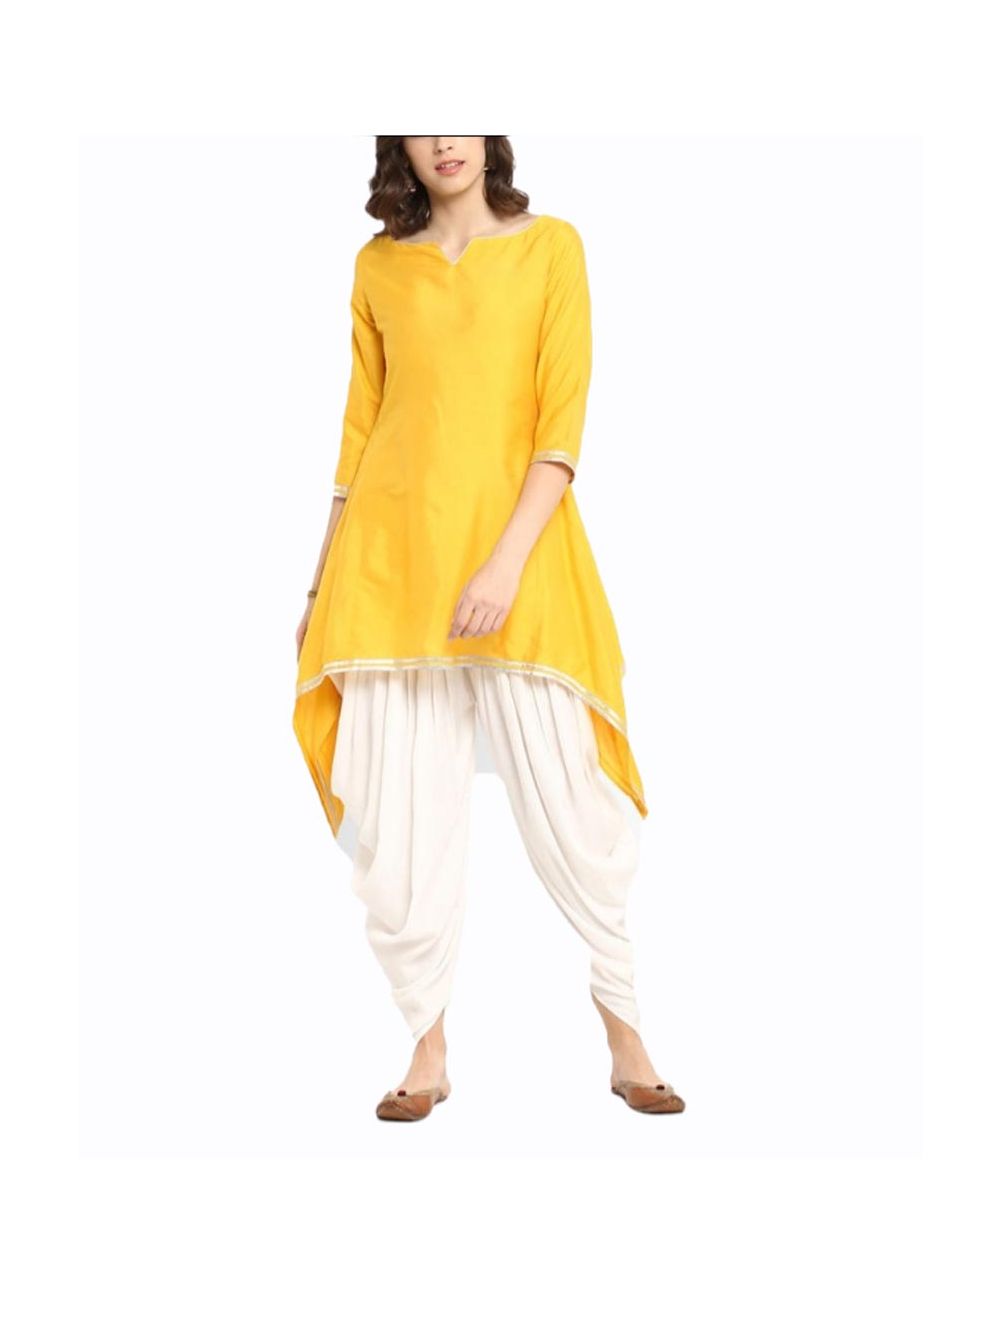 Kurti Set Online  Buy Yellow Unique Stylish Kurti with Dhoti Pants